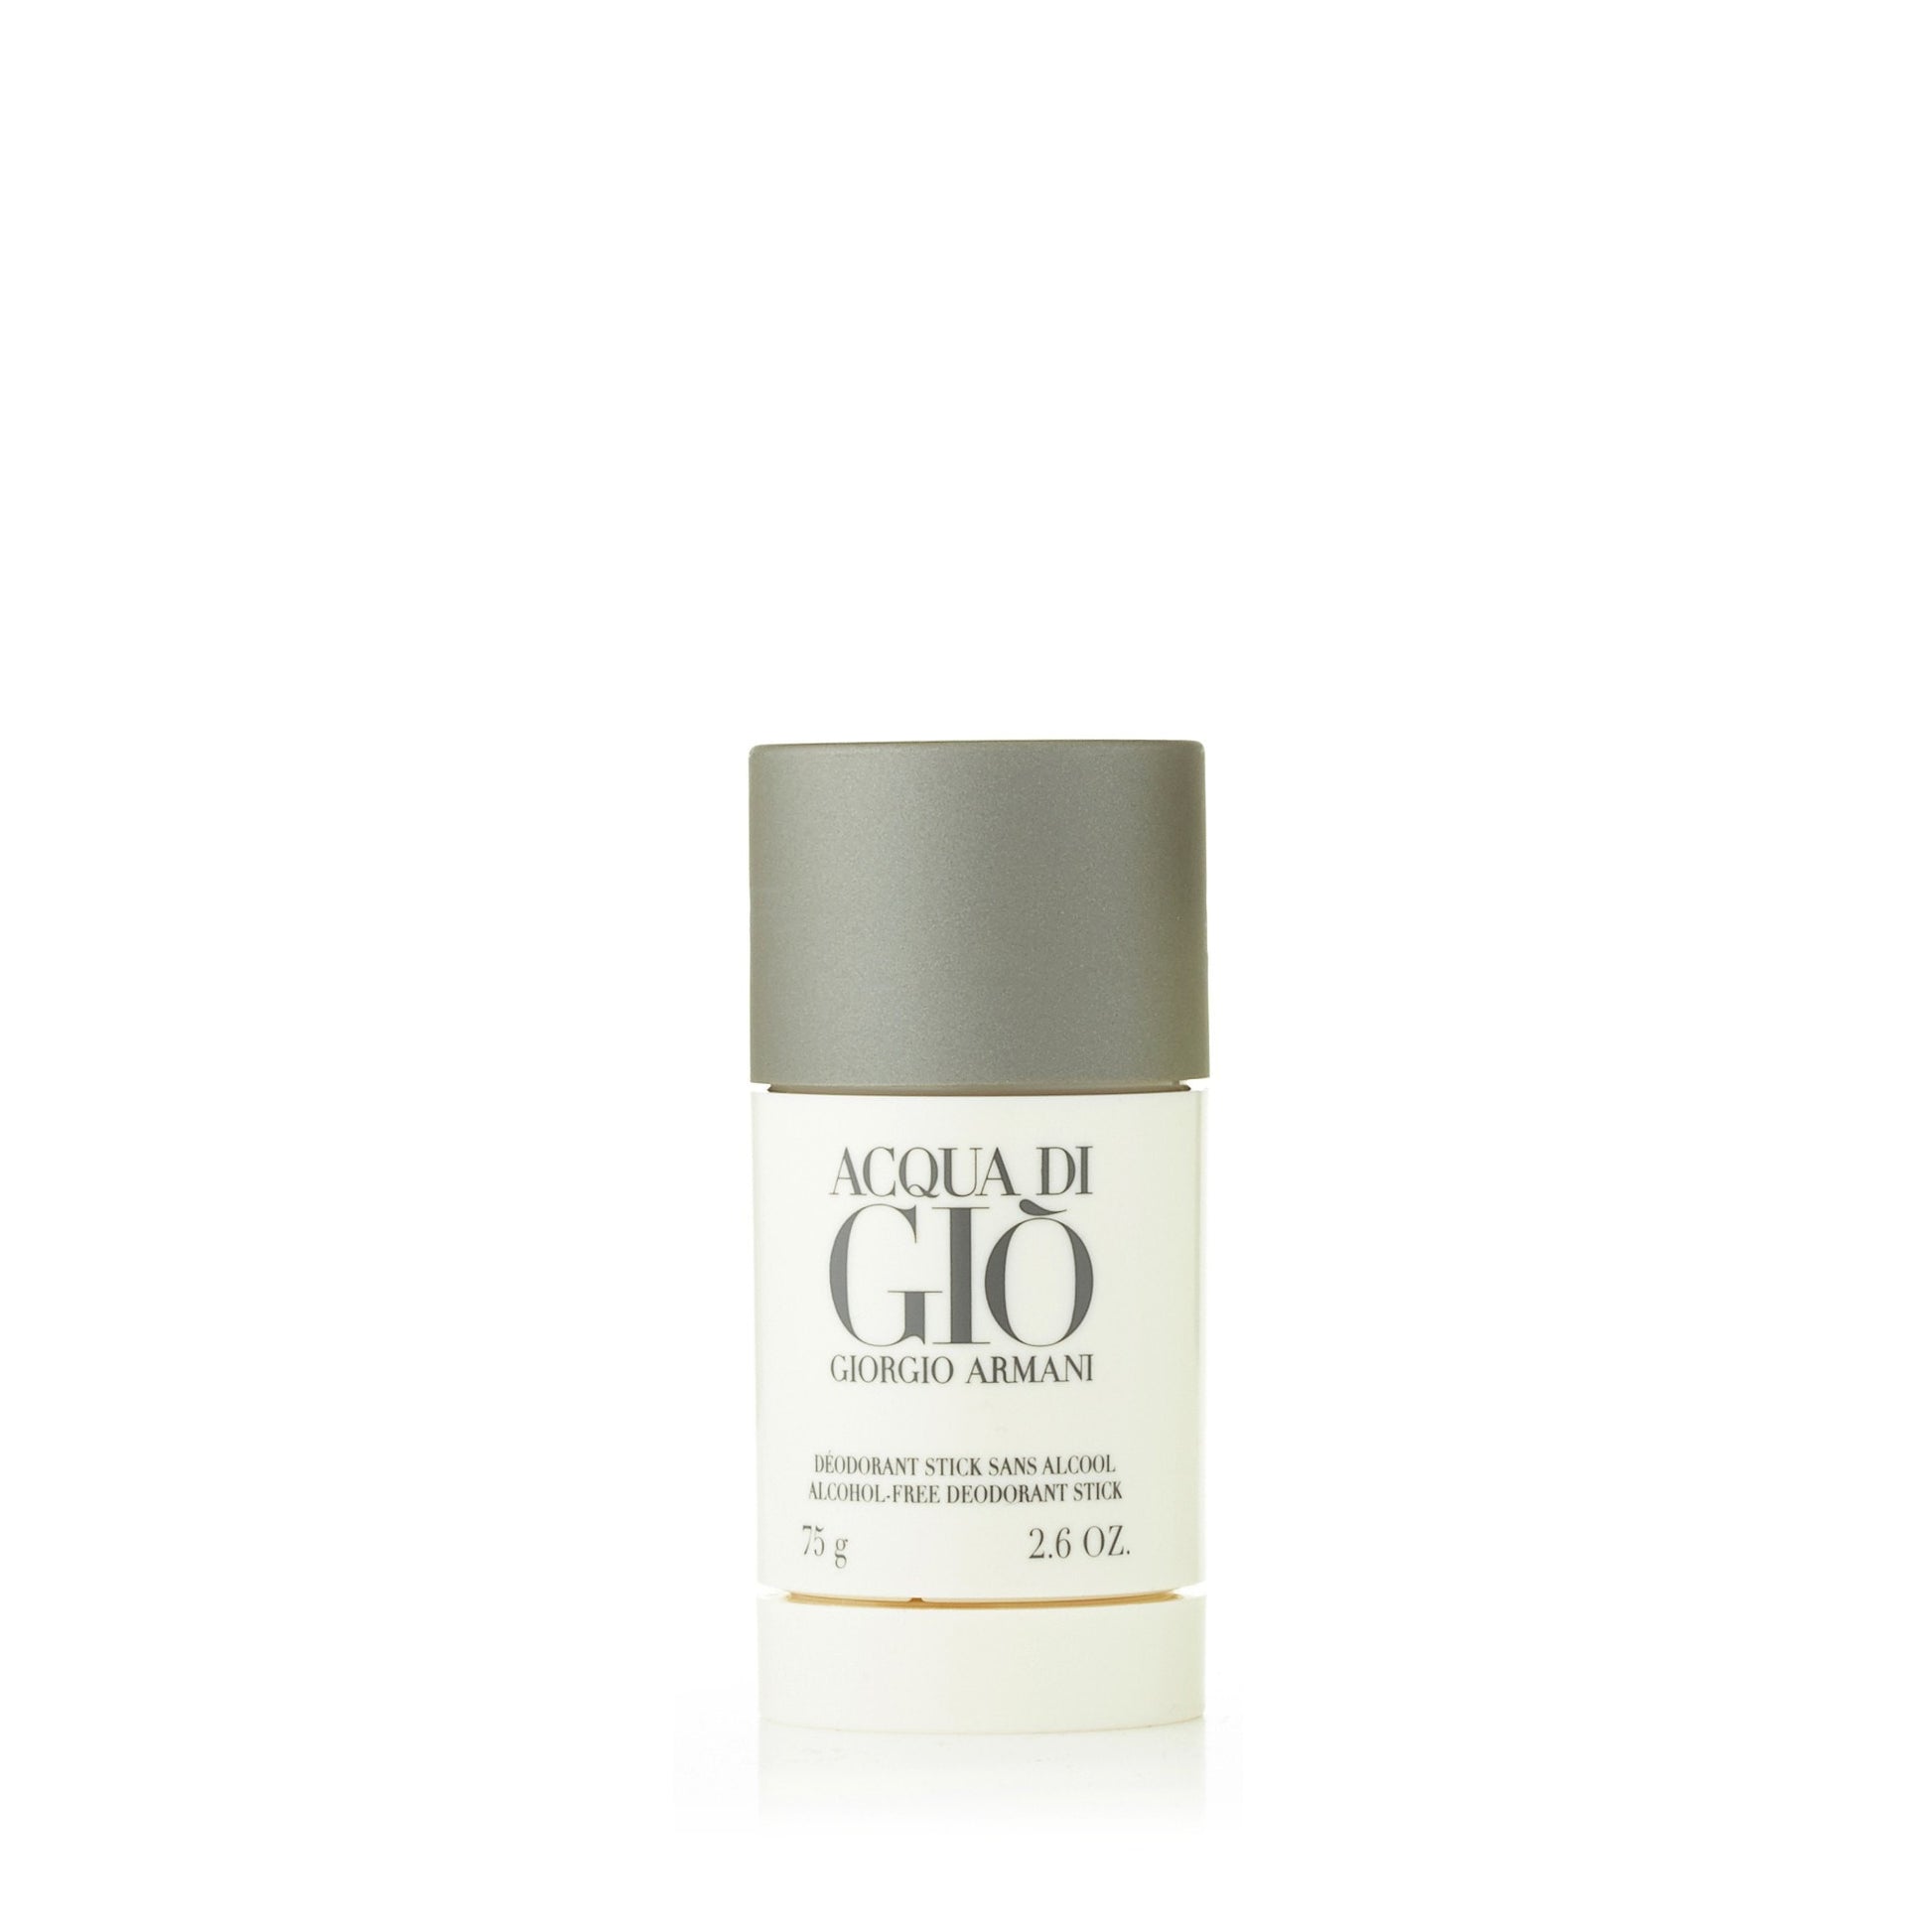 Acqua Di Gio Deodorant for Men by Giorgio Armani 2.6 oz. Click to open in modal